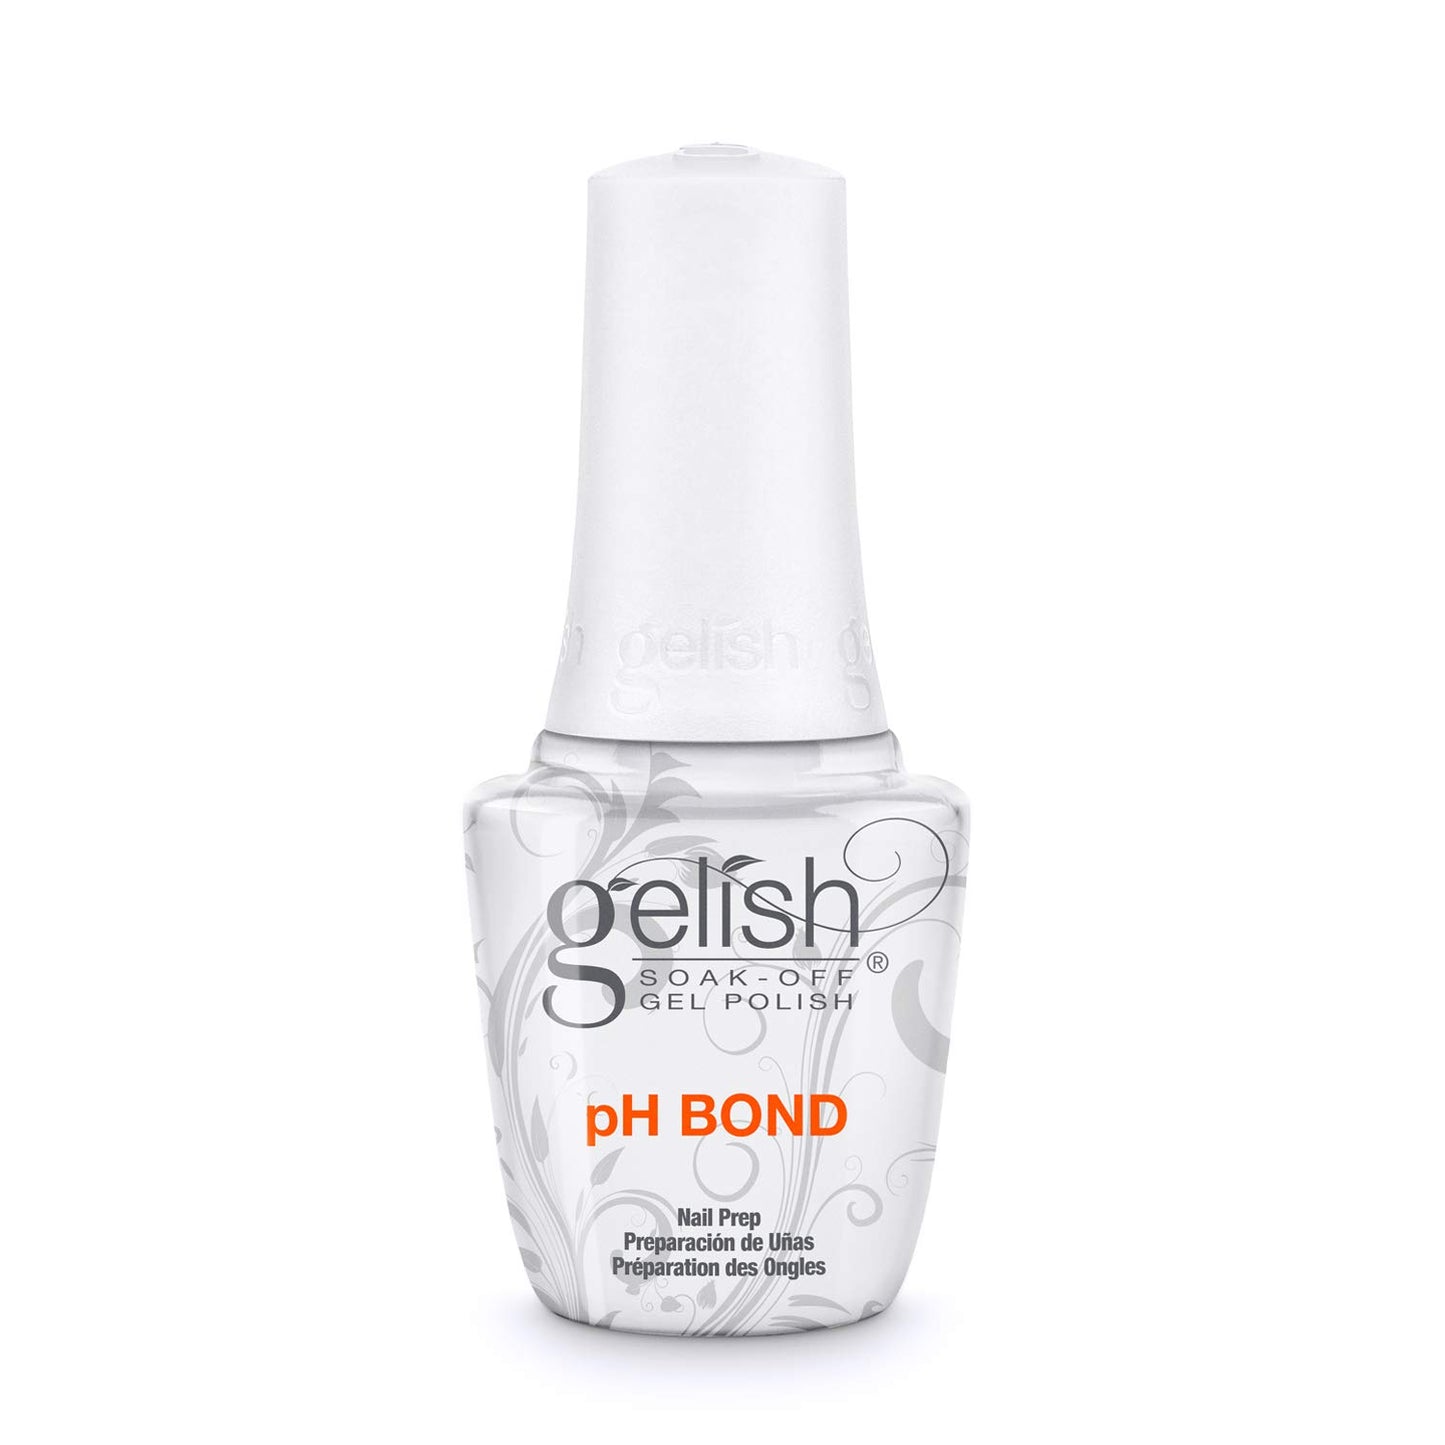 GELISH pH BOND 0.5 OZ.